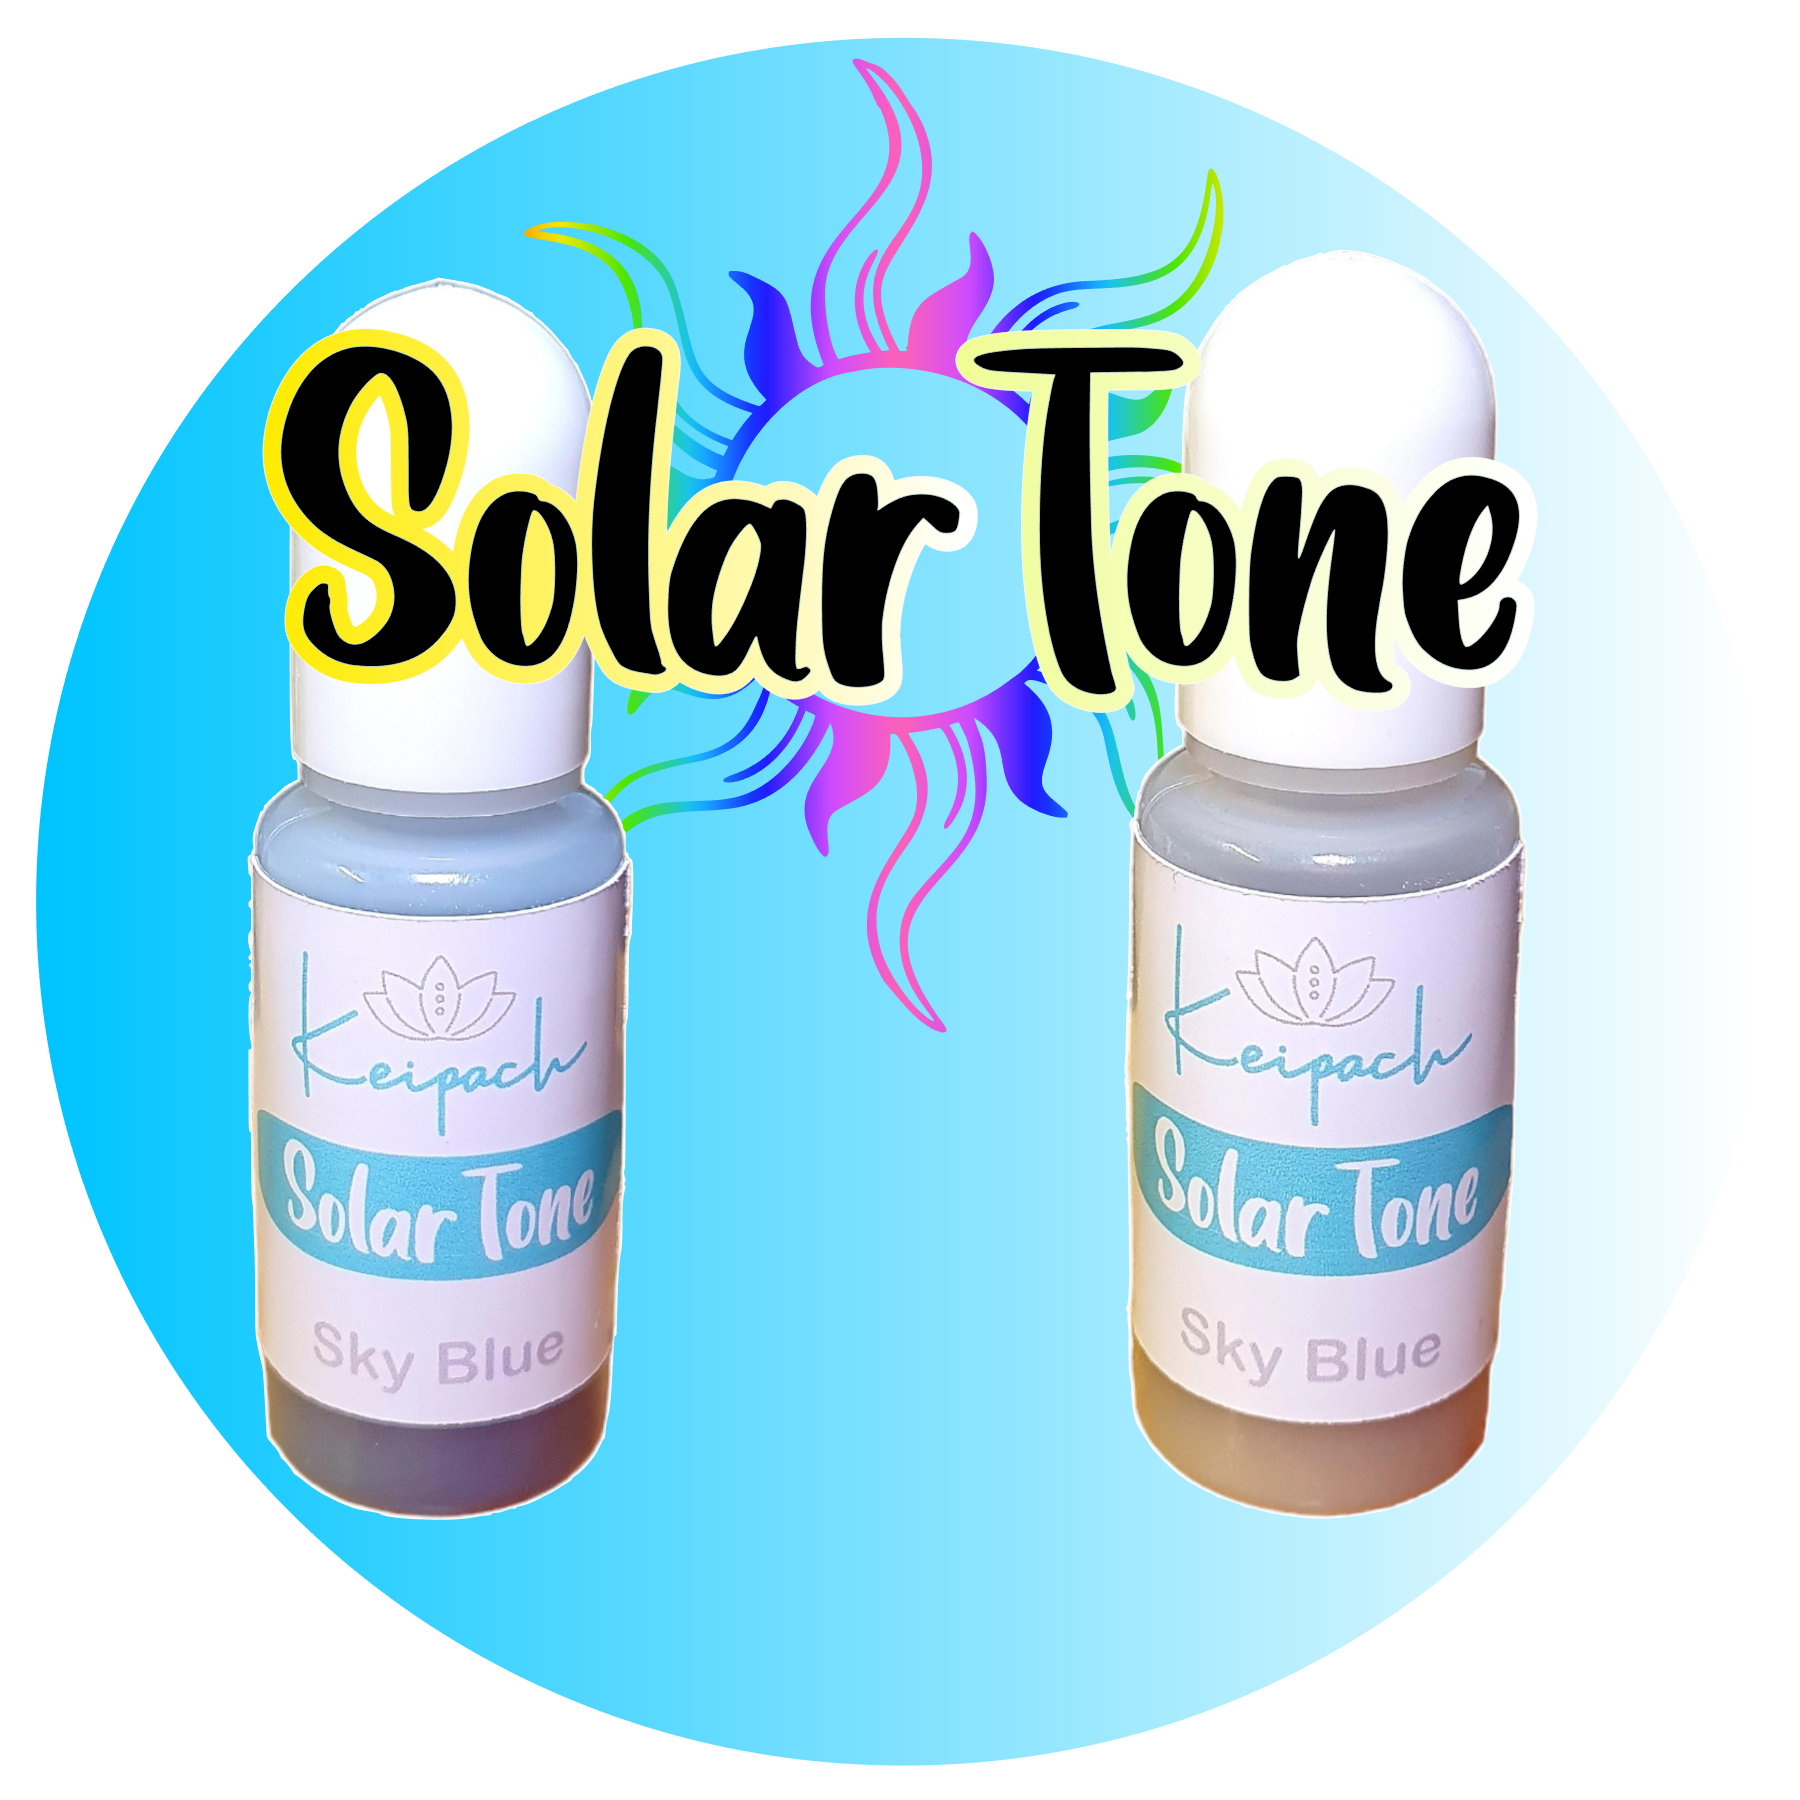 SolarTone Dye - Sky Blue - Keipach